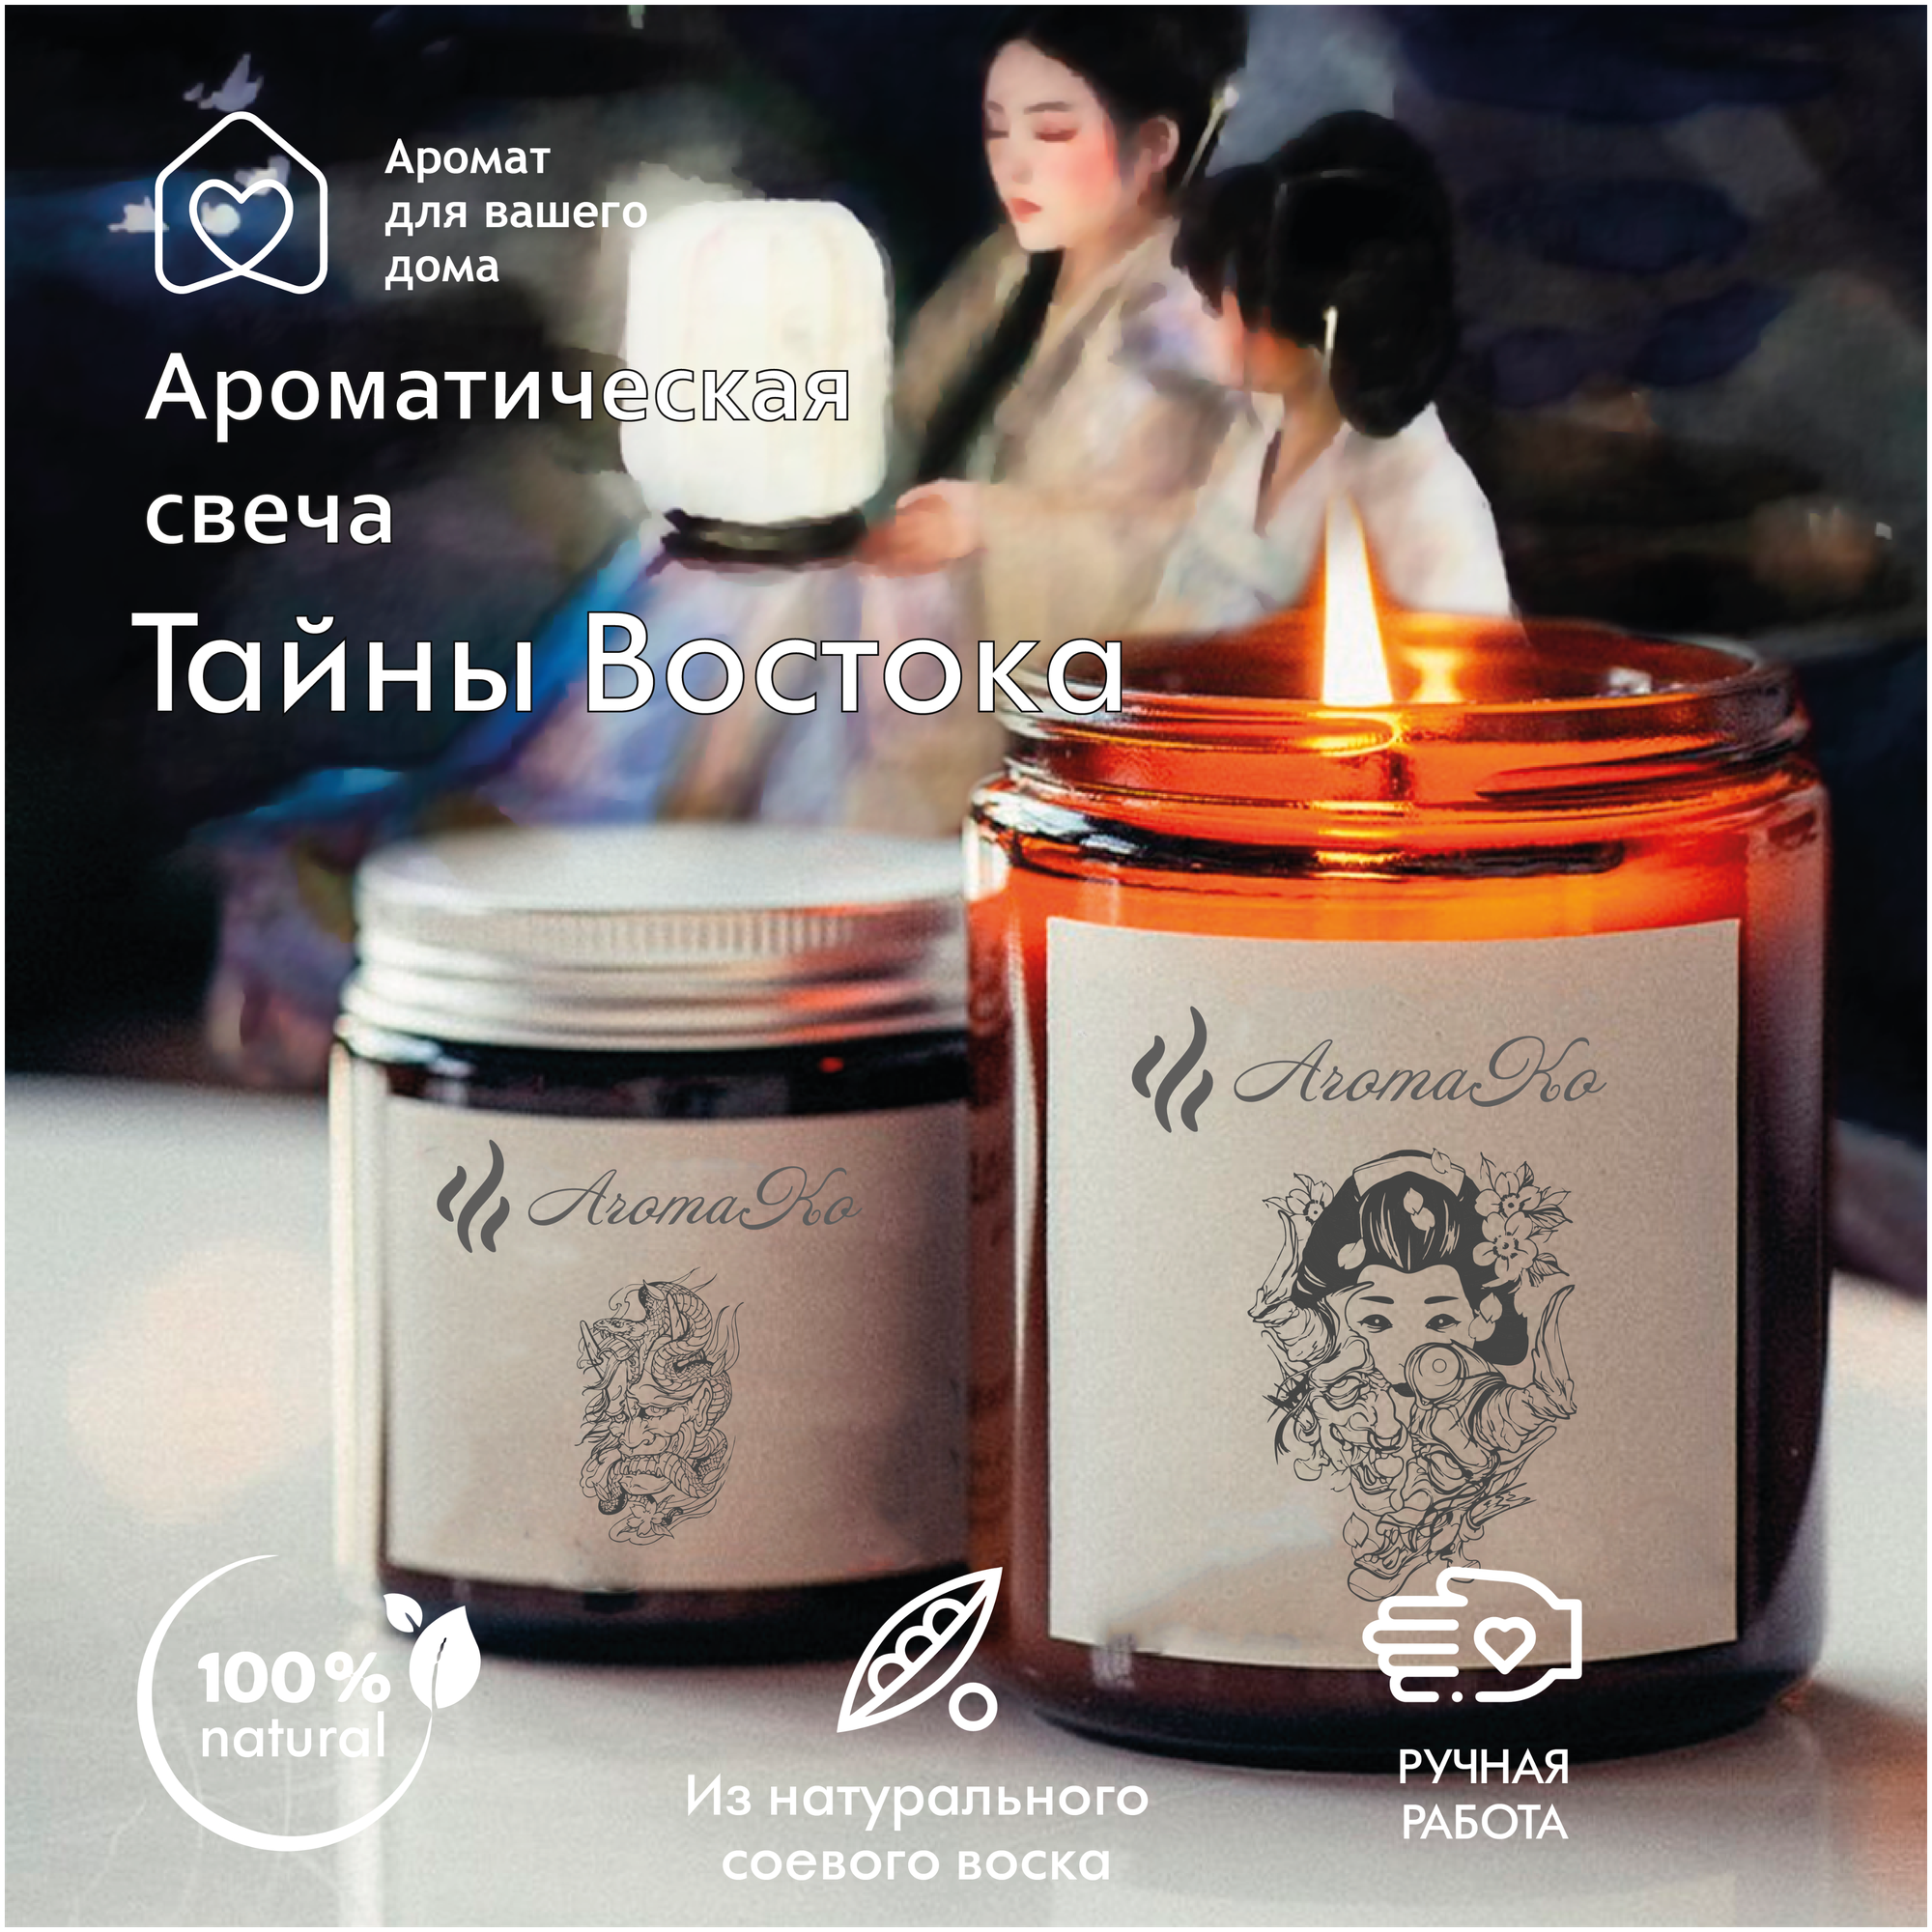 Ароматическая свеча Тайны Востока AROMAKO 200 гр/аромасвеча из натурального воска в стеклянной банке с деревянным фитилём 60 часов горения